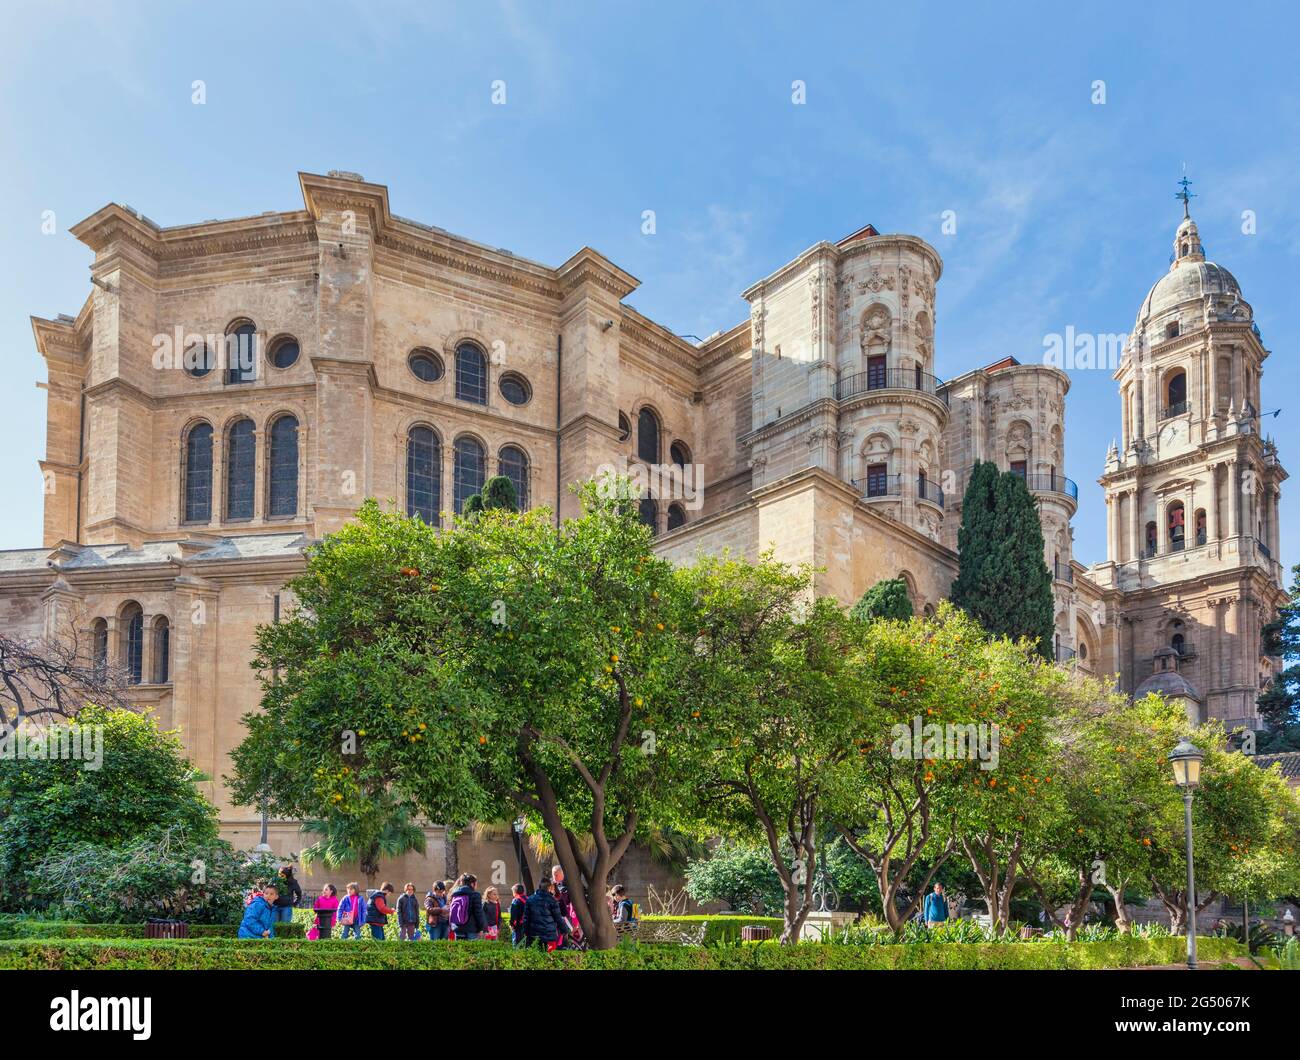 Malaga, Provincia di Malaga, Costa del Sol, Spagna. La cattedrale rinascimentale. Il nome completo spagnolo è la Santa Iglesia Catedral Basilica de la Encarnacion. Foto Stock